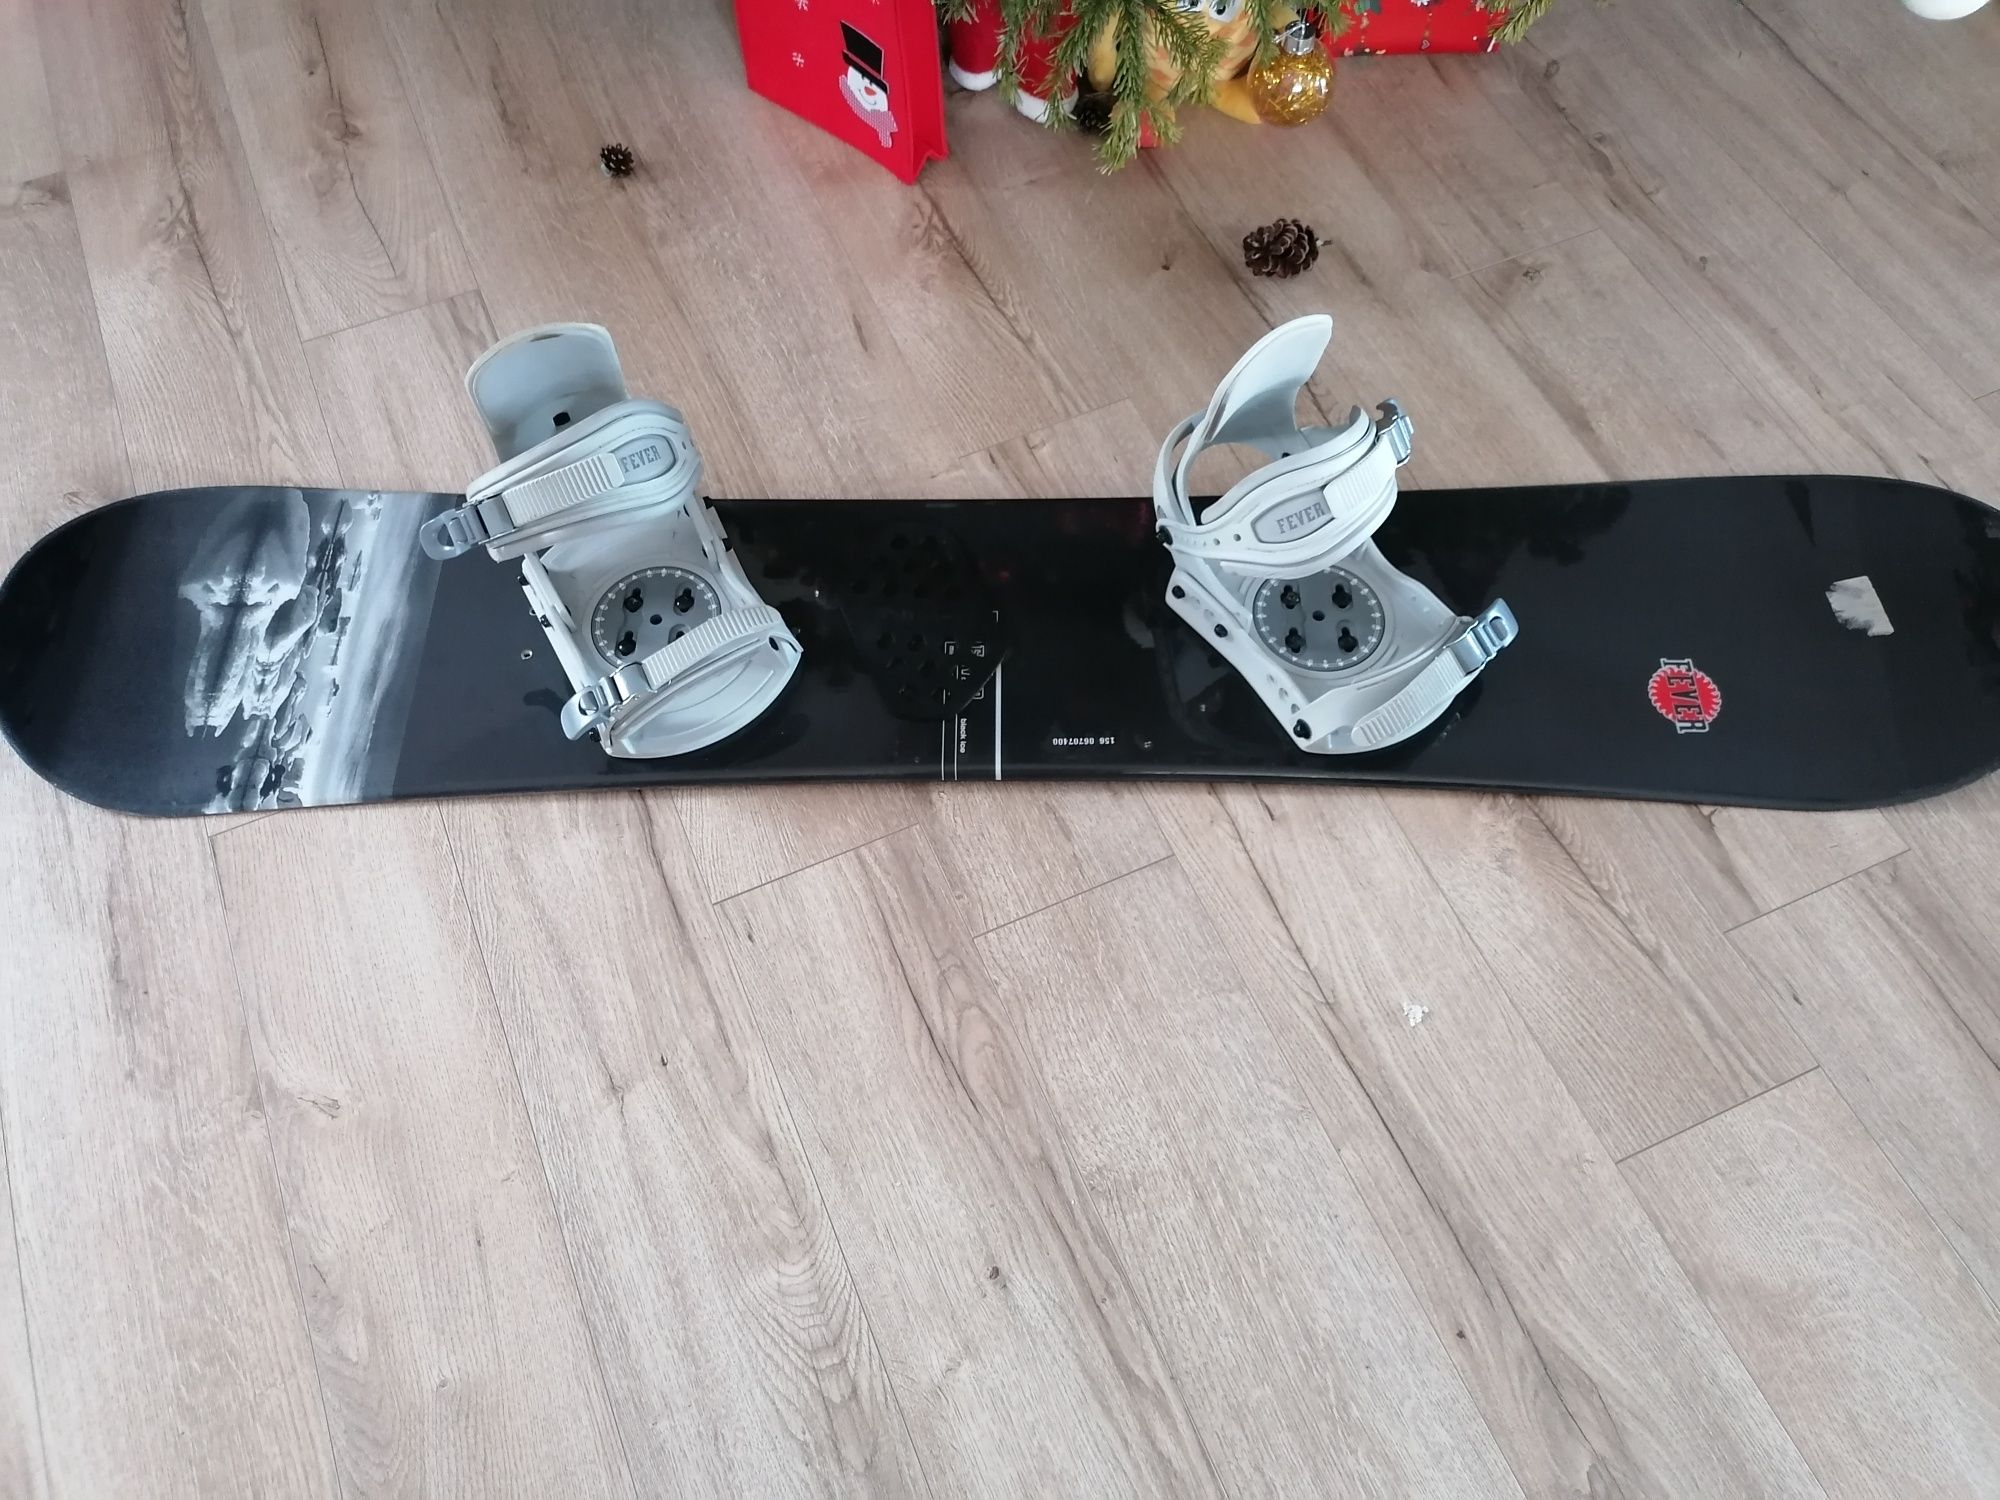 Placa snowboard FEVER